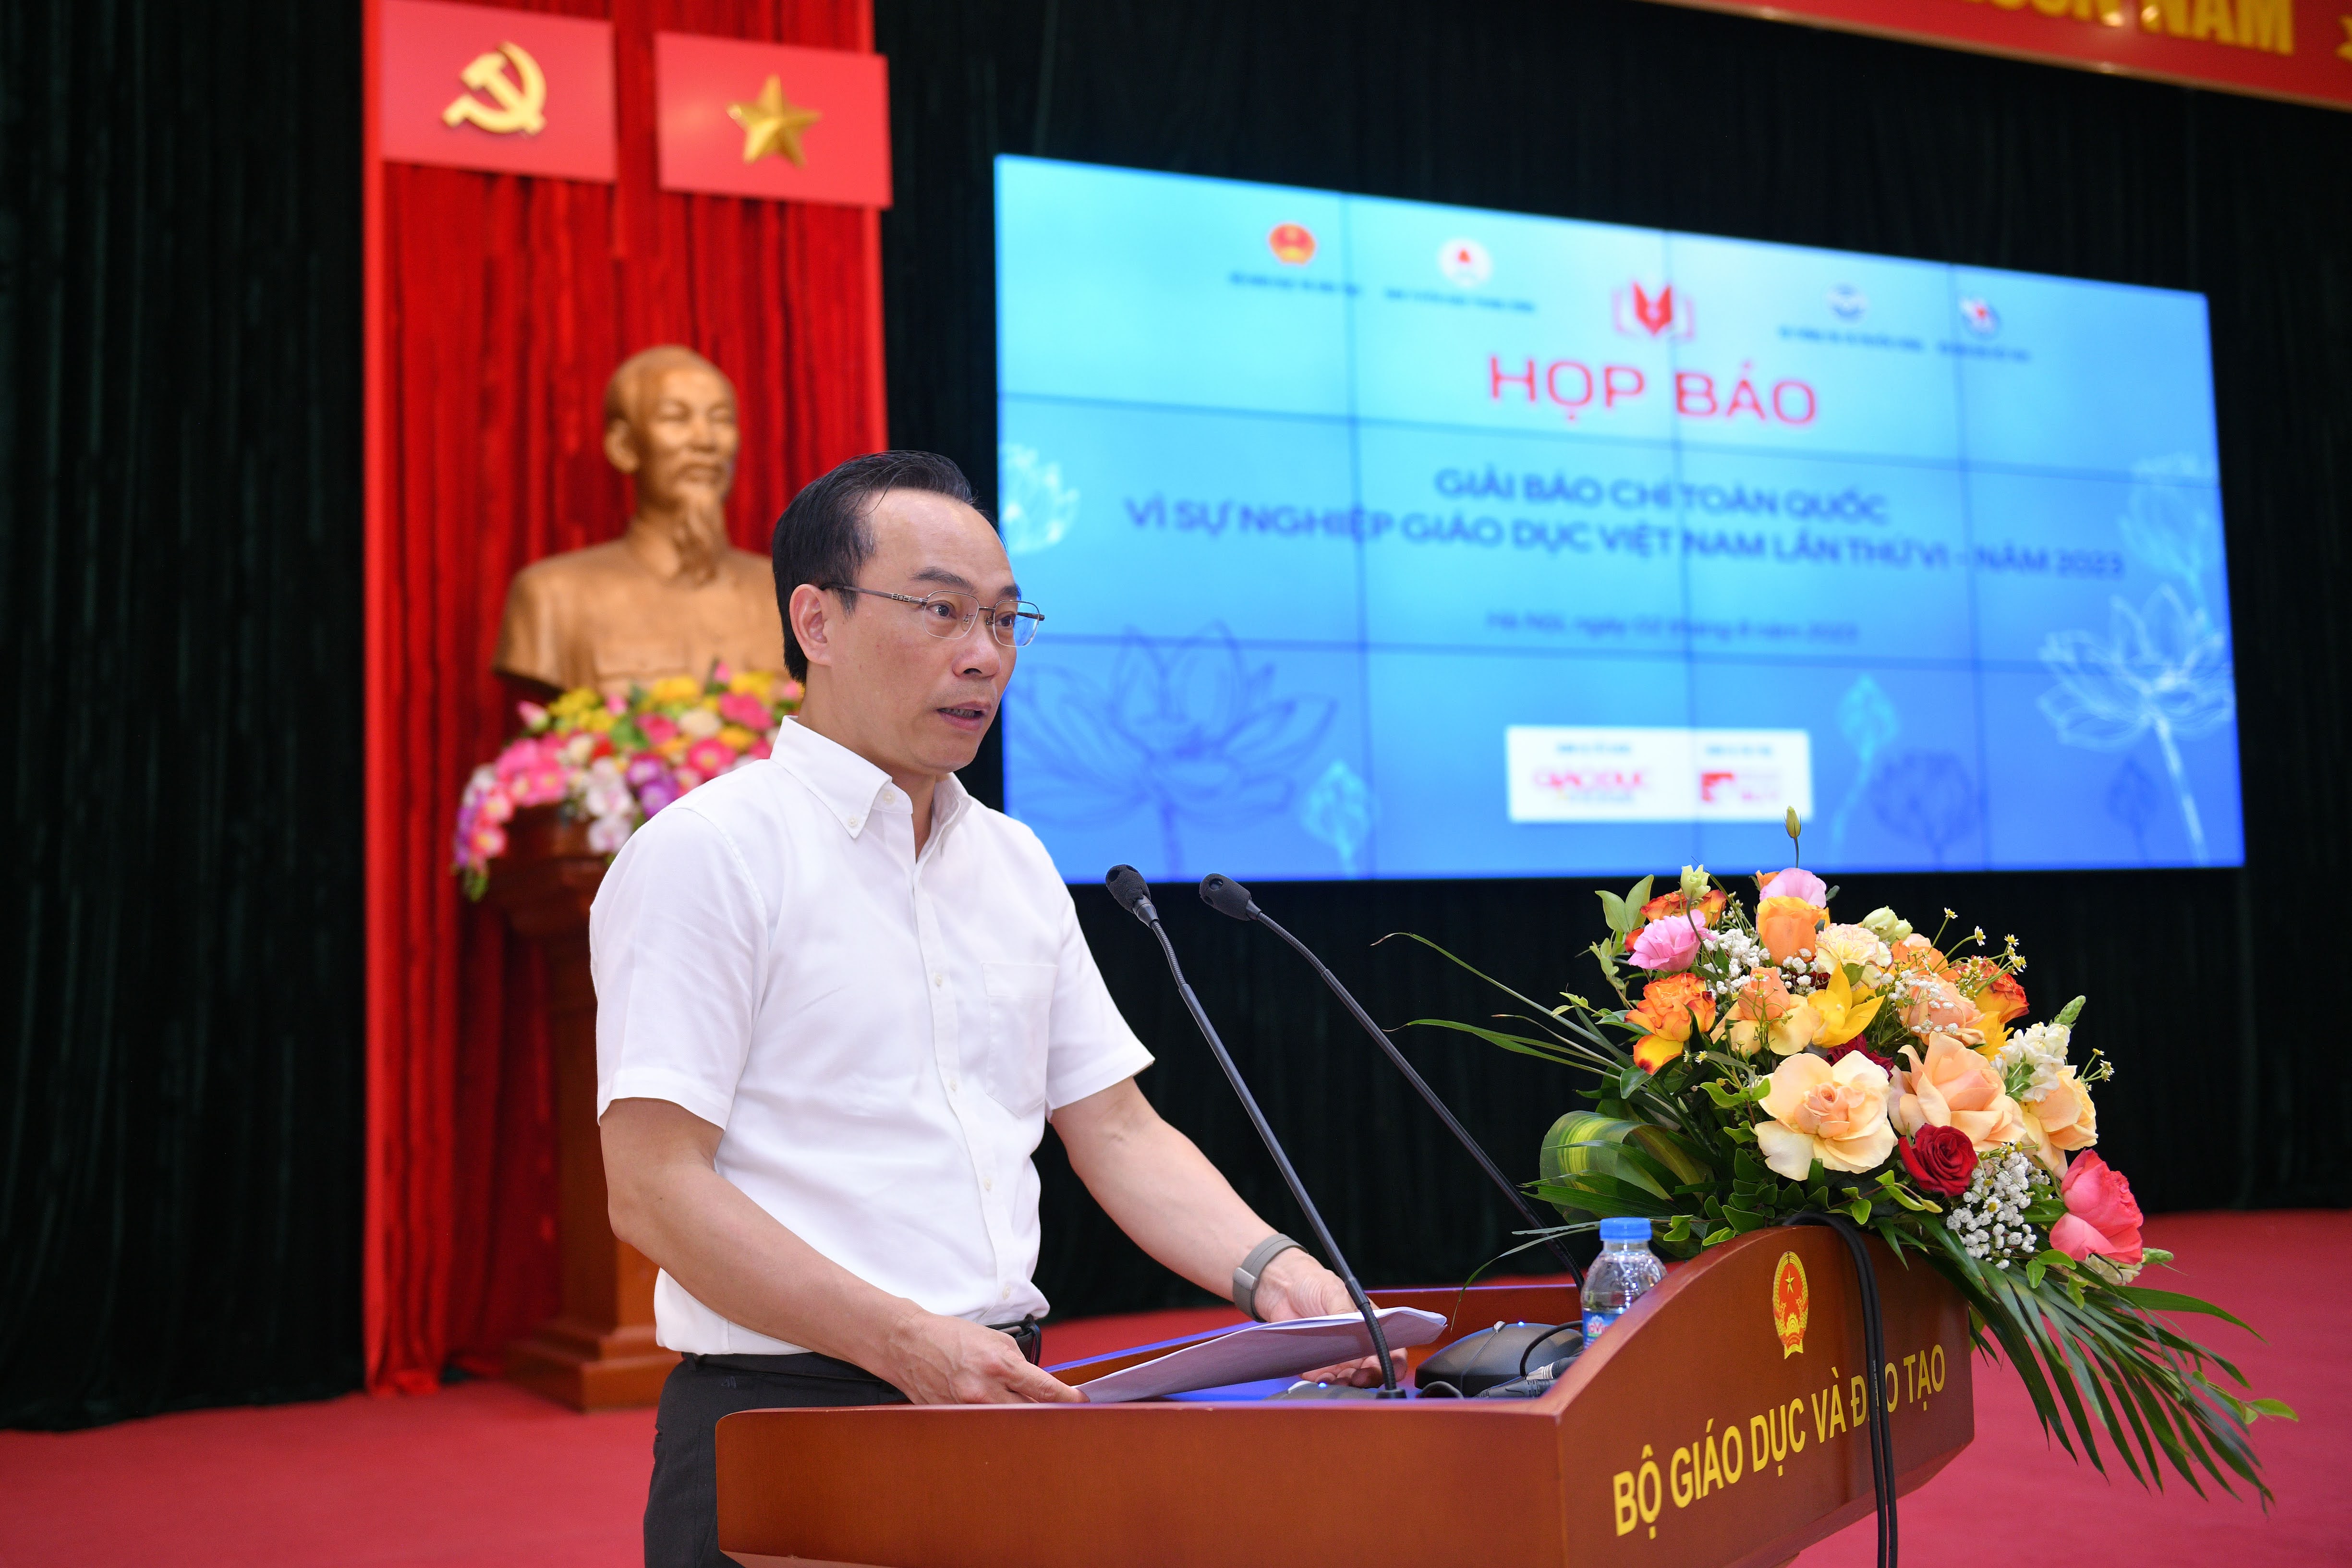 Ông Hoàng Minh Sơn, Thứ trưởng Bộ GD&ĐT phát biểu khai mạc Họp báo.